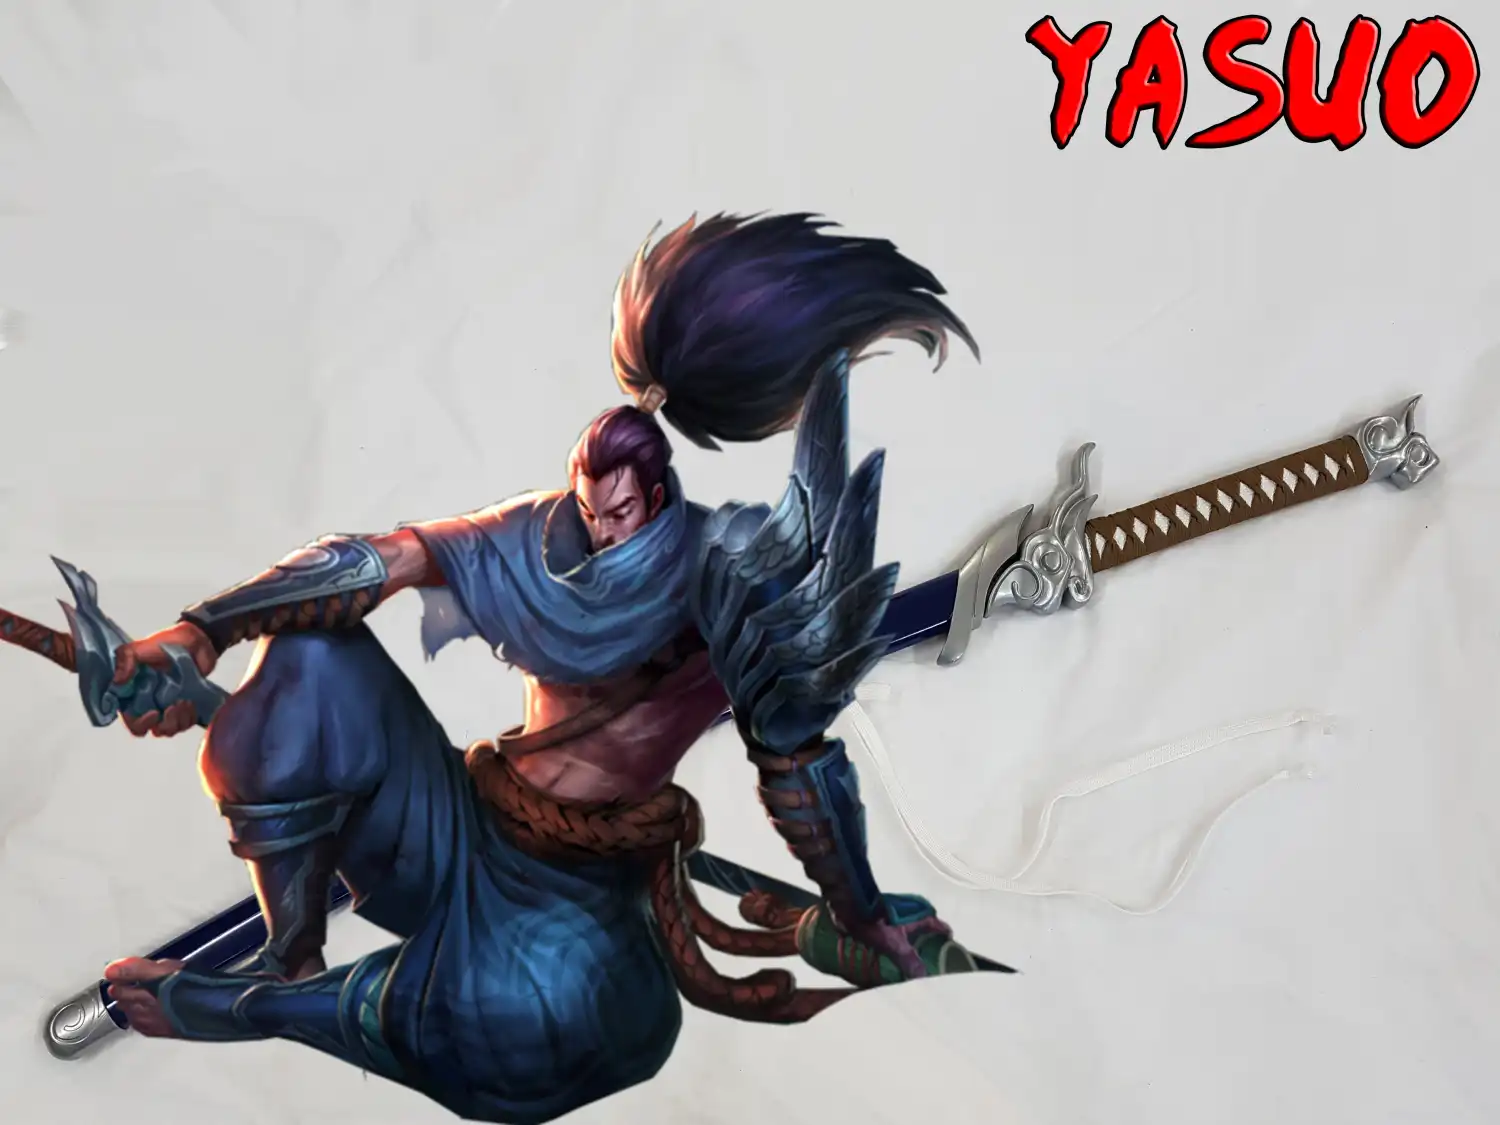 katana de yasuo dans league of legends